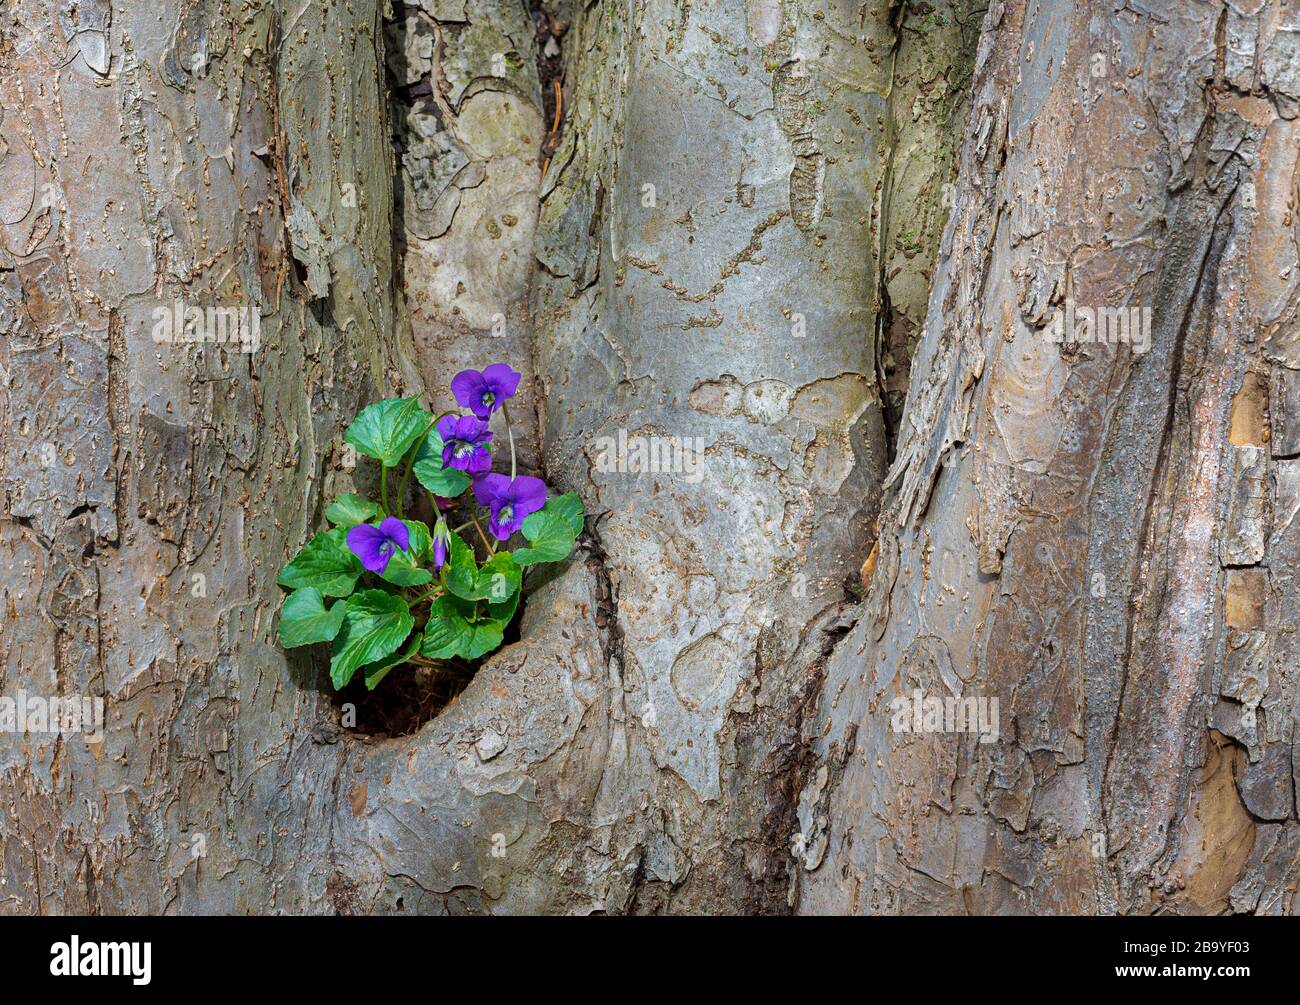 Gemeines Blauviolett (Viola sororia) wächst in Erde, das sich in einer Mulde angesammelt hatte, die sich an der Basis eines alten Krabbenbaumes (Malus sp.) gebildet hatte. Stockfoto